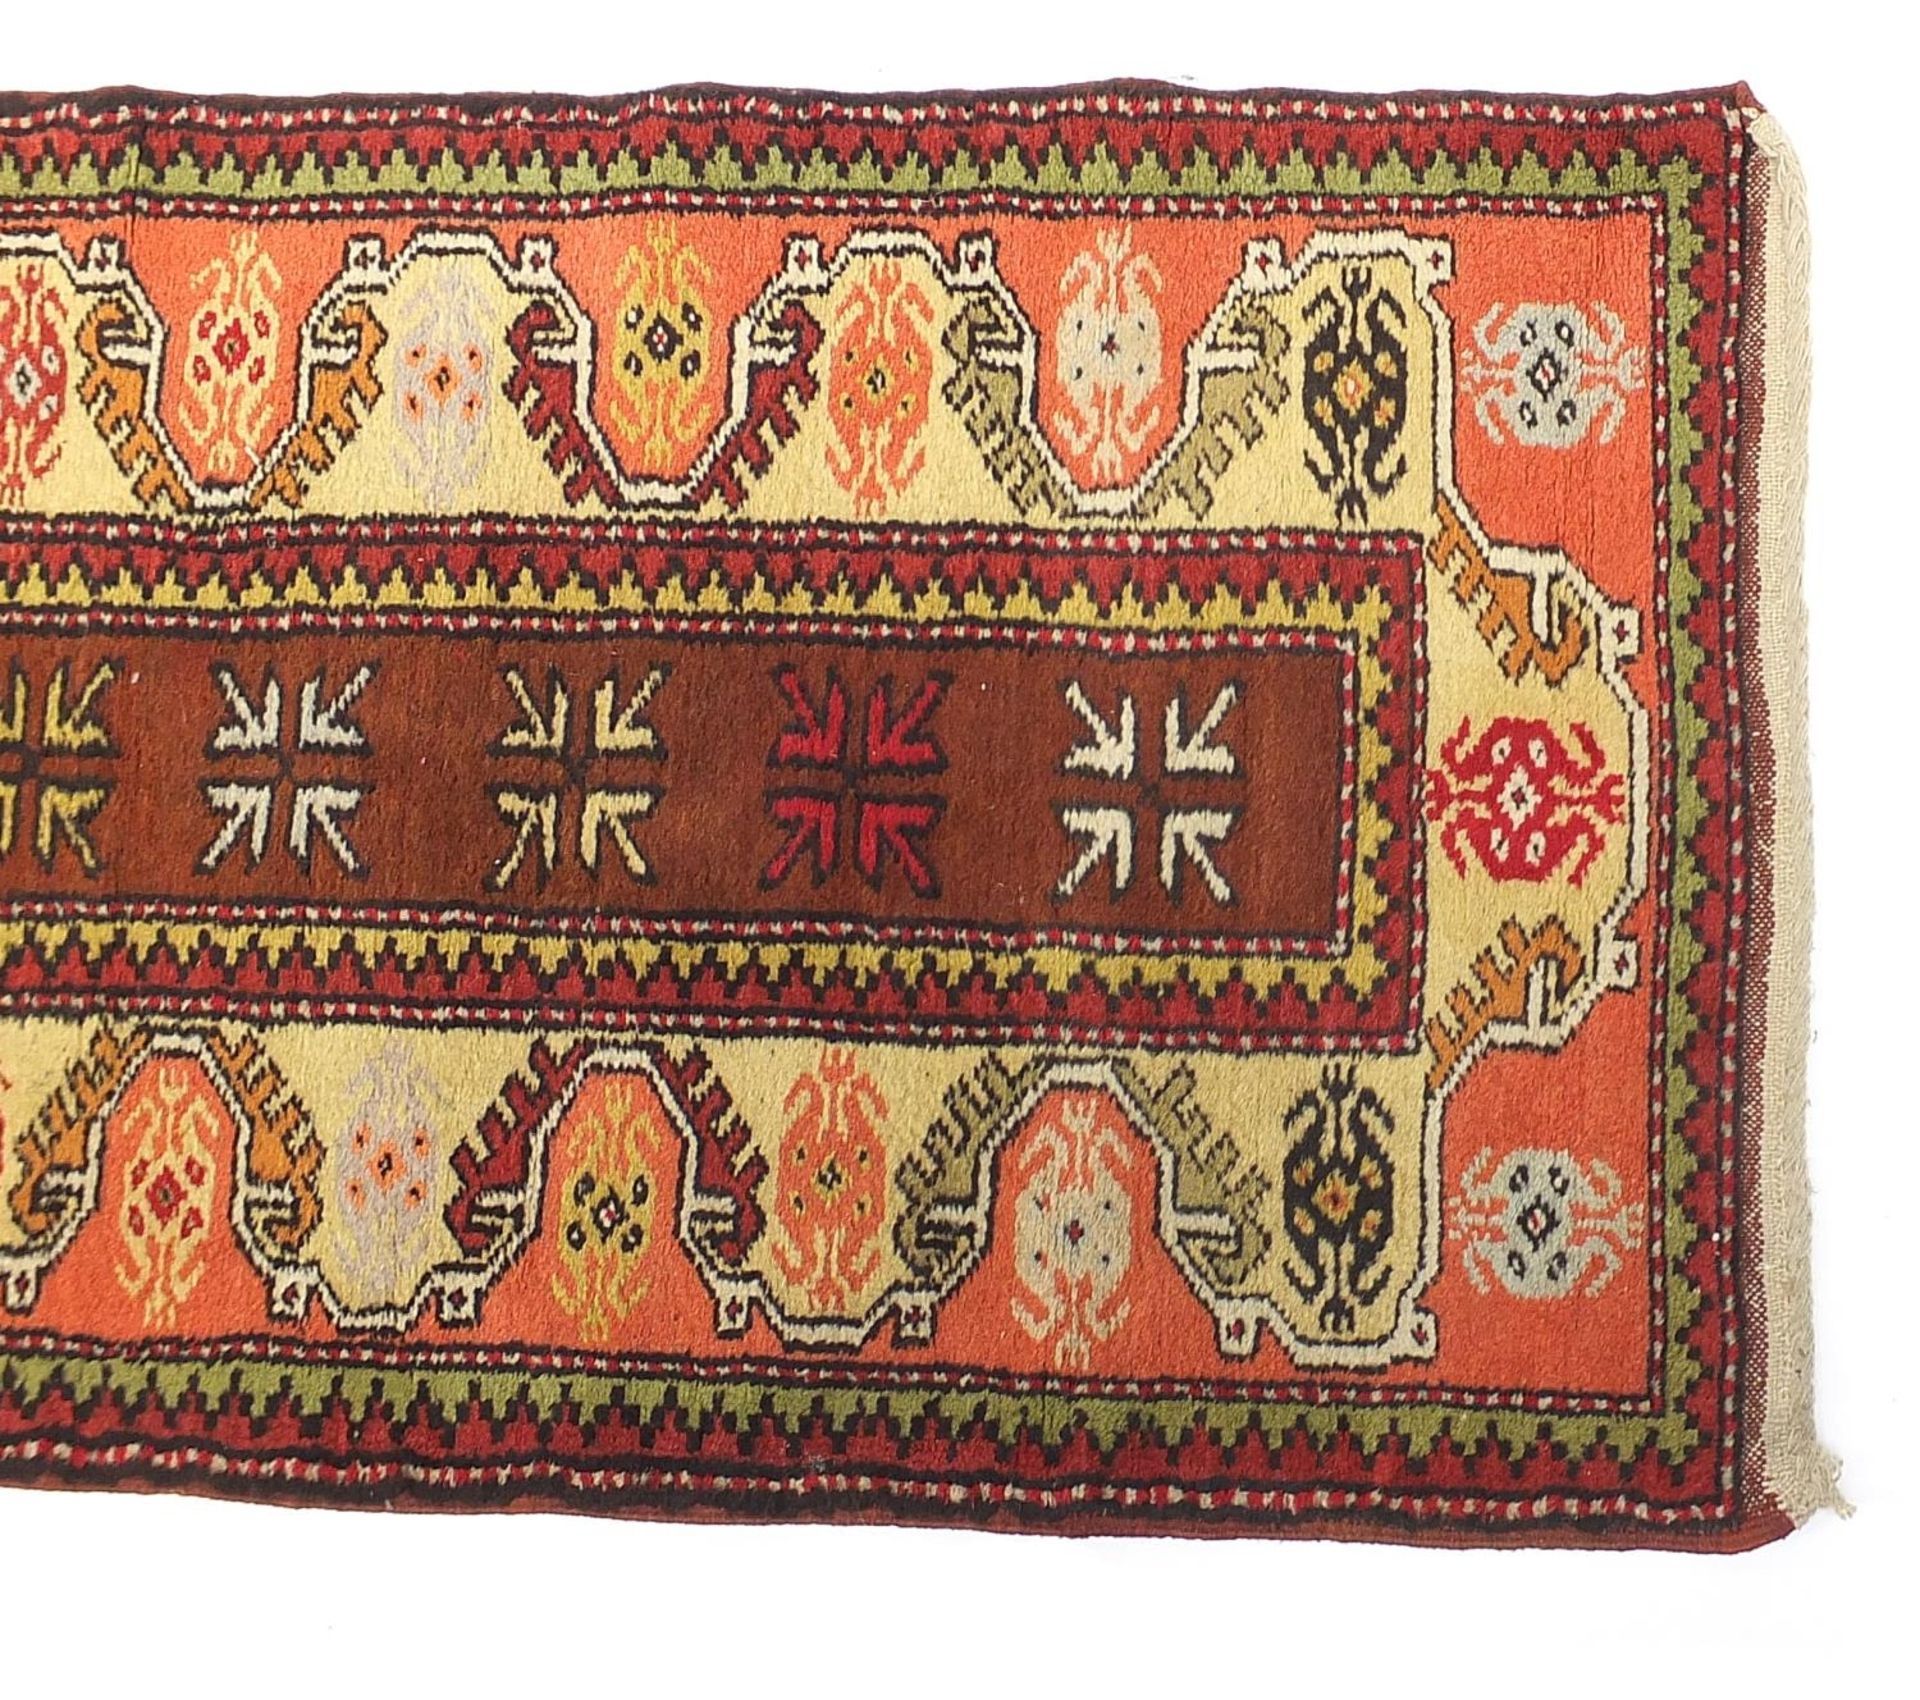 Rectangular Middle Eastern carpet runner having and all over geometric design, 275cm x 75cm - Image 3 of 5